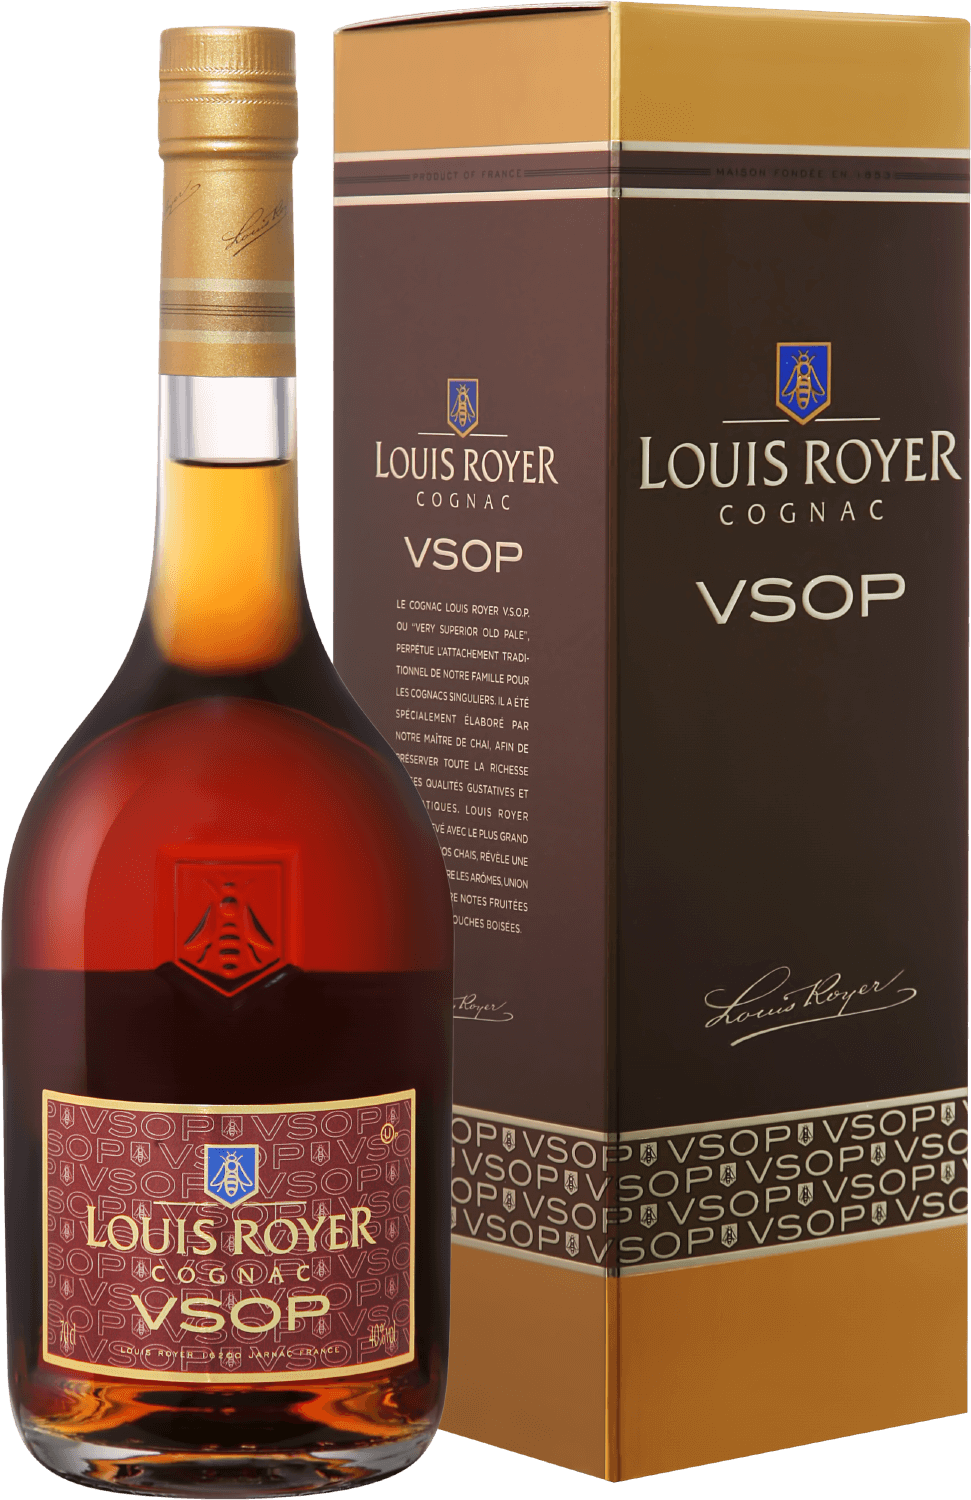 louis royer cognac xo gift box Louis Royer Cognac VSOP Kosher (gift box)